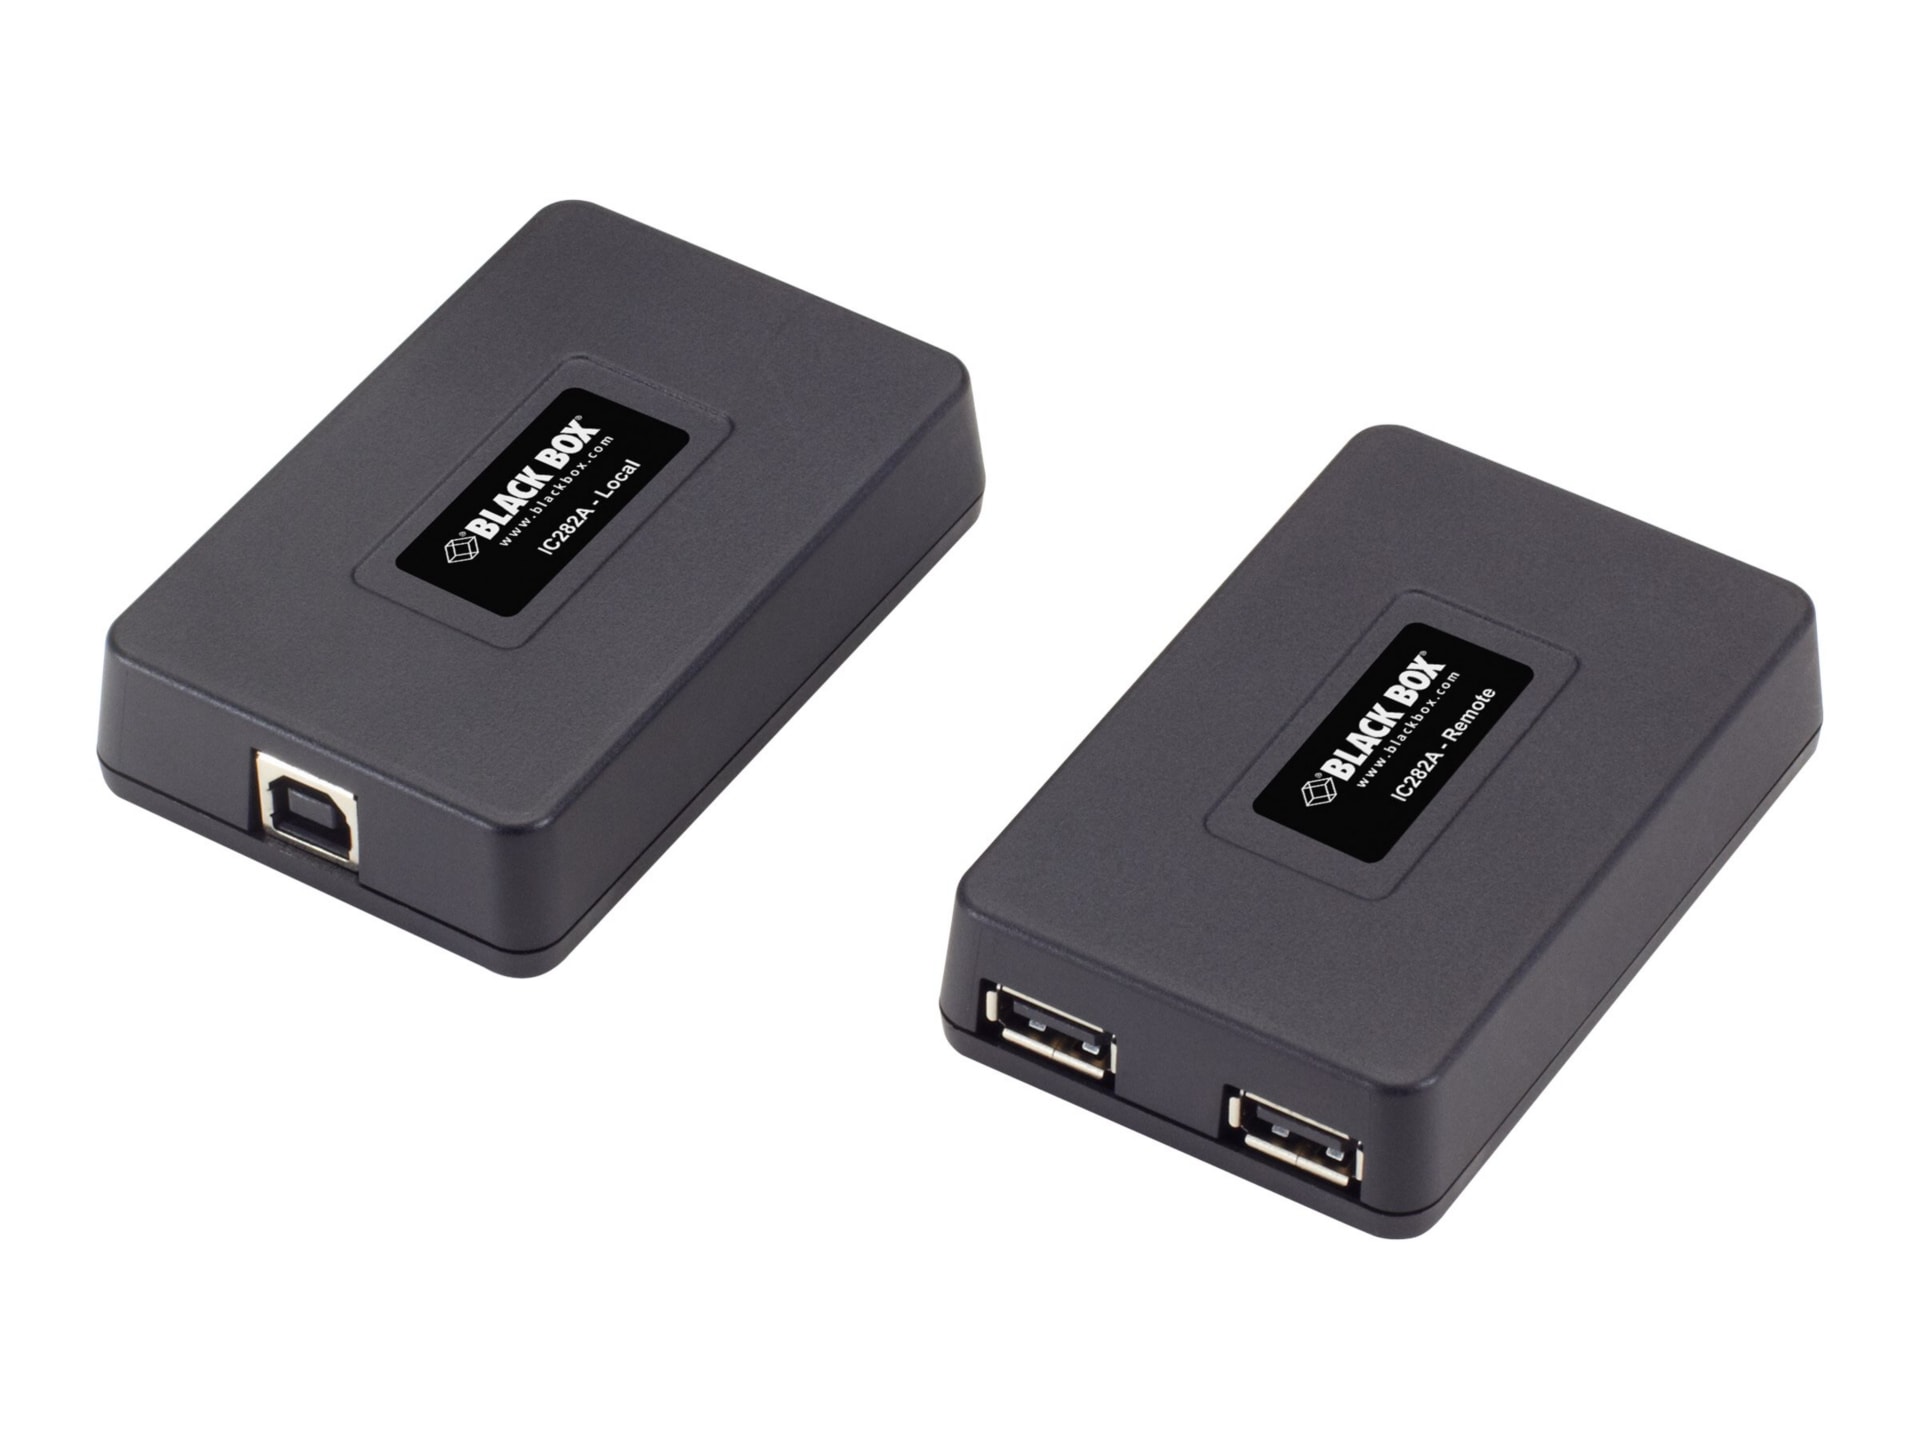 Black Box USB 1.1 over CAT5 Extender, 40meter, 12mbps, 2-Port, Bus Power